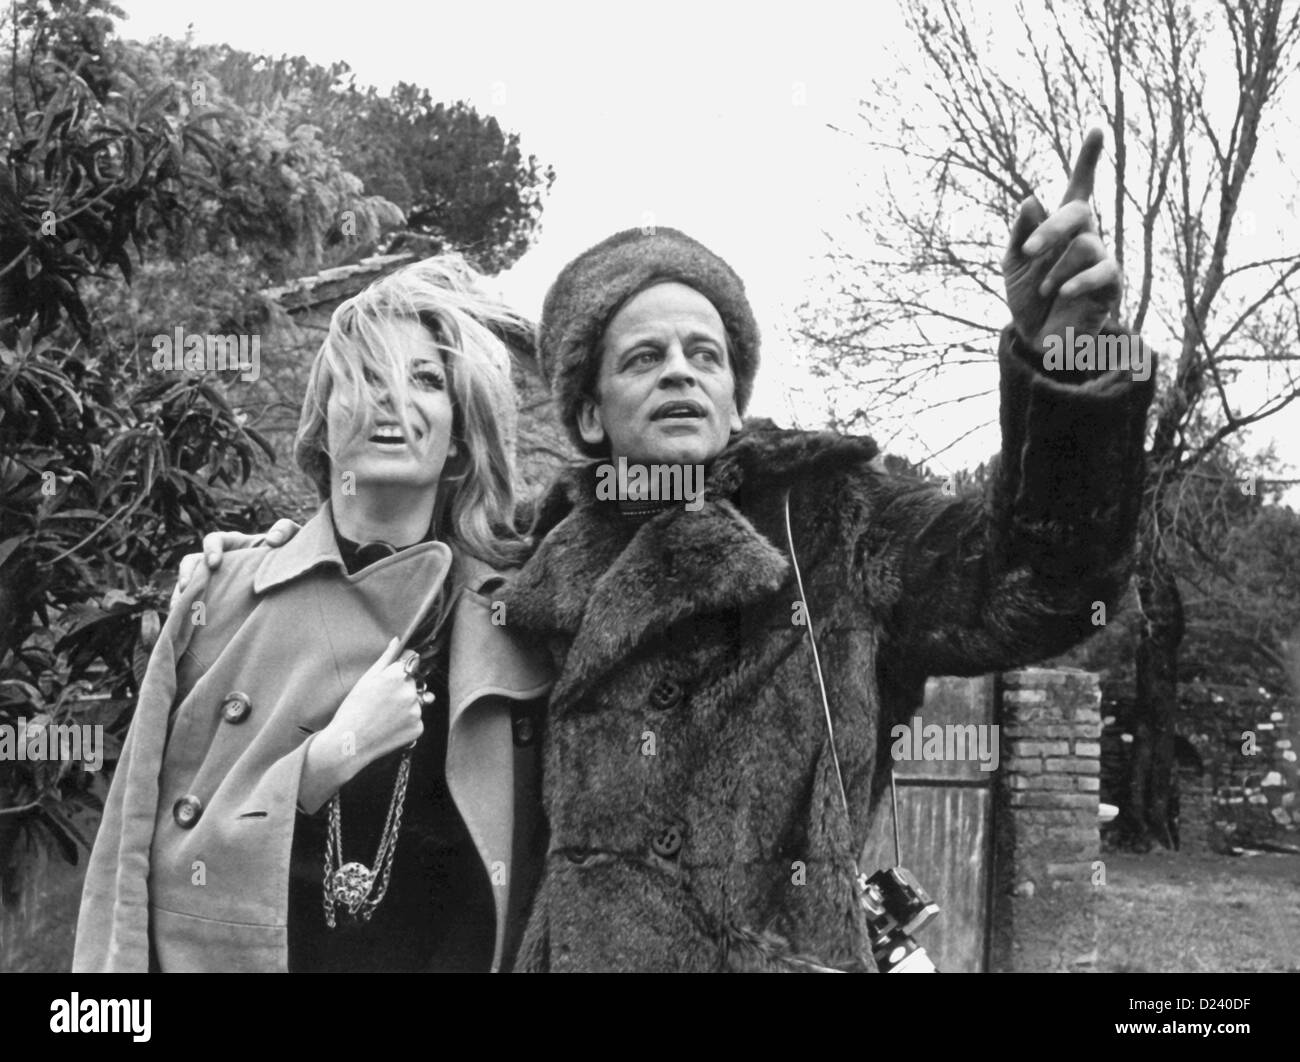 (Afp) - L'acteur allemand Klaus Kinski et l'actrice Christiane Krueger en photo lors du tournage du film 'Edgar Wallace A doppia faccia' ('Double Face'), 1969. Un 'enfant terrible' de l'industrie du cinéma, les films de Kinski : 'Buddy Buddy", "Pour quelques dollars de plus', ainsi que 'Aguirre, der Zorn Gottes' ('Aguirre, la colère de Dieu') et 'Nosferatu : Phantom der Nacht' ('Nosferatu le Vampire'). Kinski est né le 18 octobre 1926 à Danzig, Allemagne (aujourd'hui Gdansk, Pologne) sous le nom de Nikolaus Guenther Nakszynski et mort le 23 novembre 1991 à Lagunitas, en Californie, d'une crise cardiaque. Banque D'Images